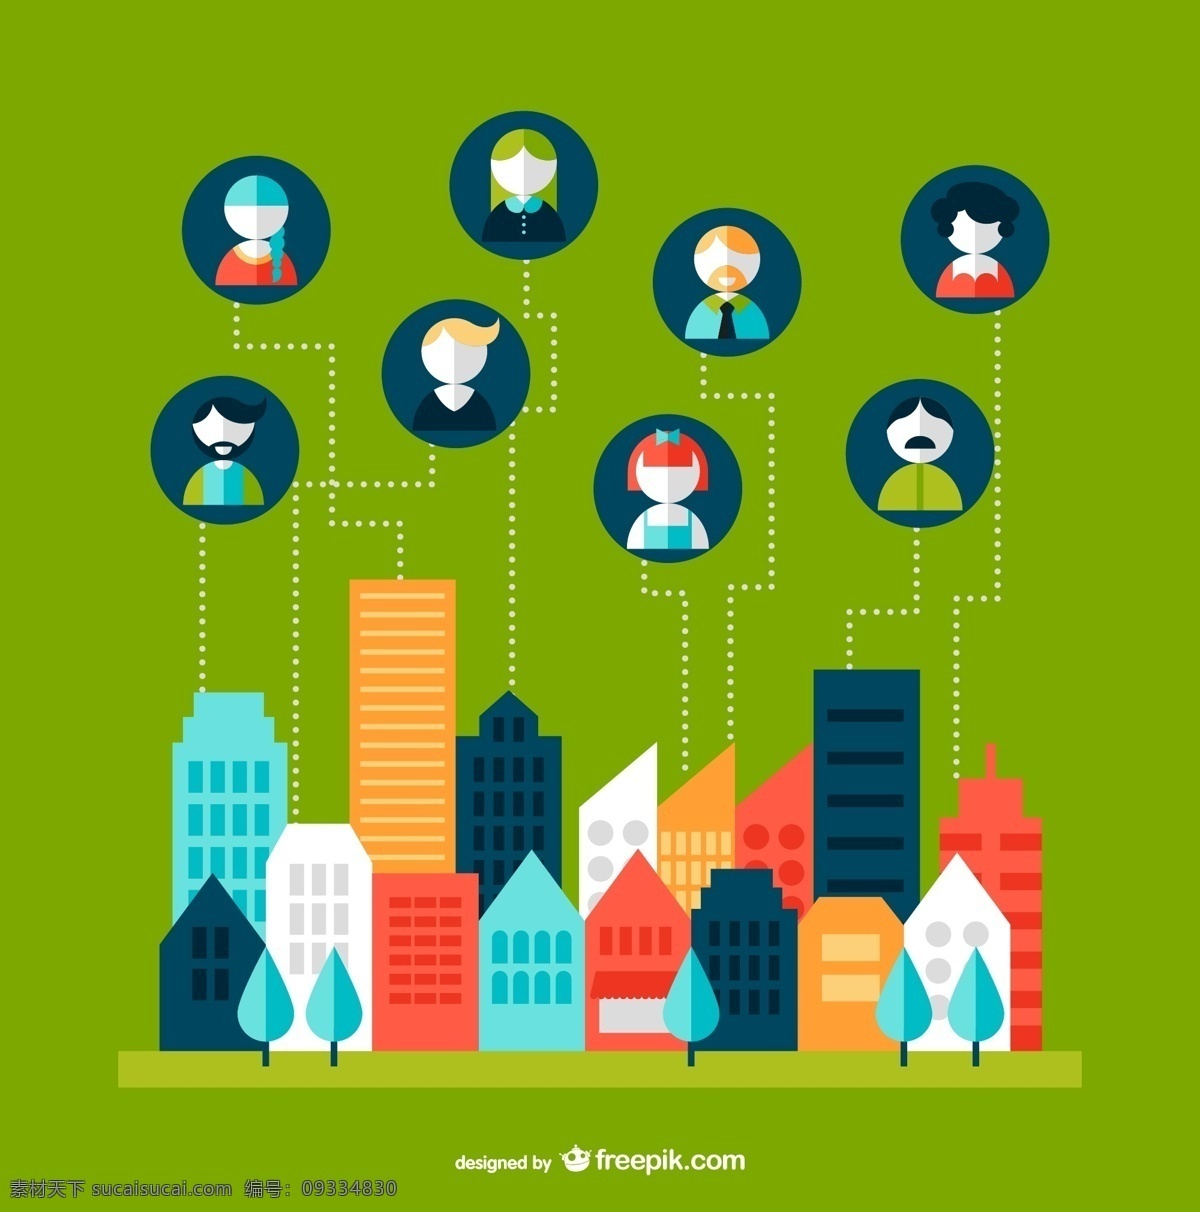 创意 社交 生活 背景 矢量 人物 图标 建筑 城市 绿色 头像 扁平化 社交生活 楼群 信息图 白领开心 科技 科幻 商务